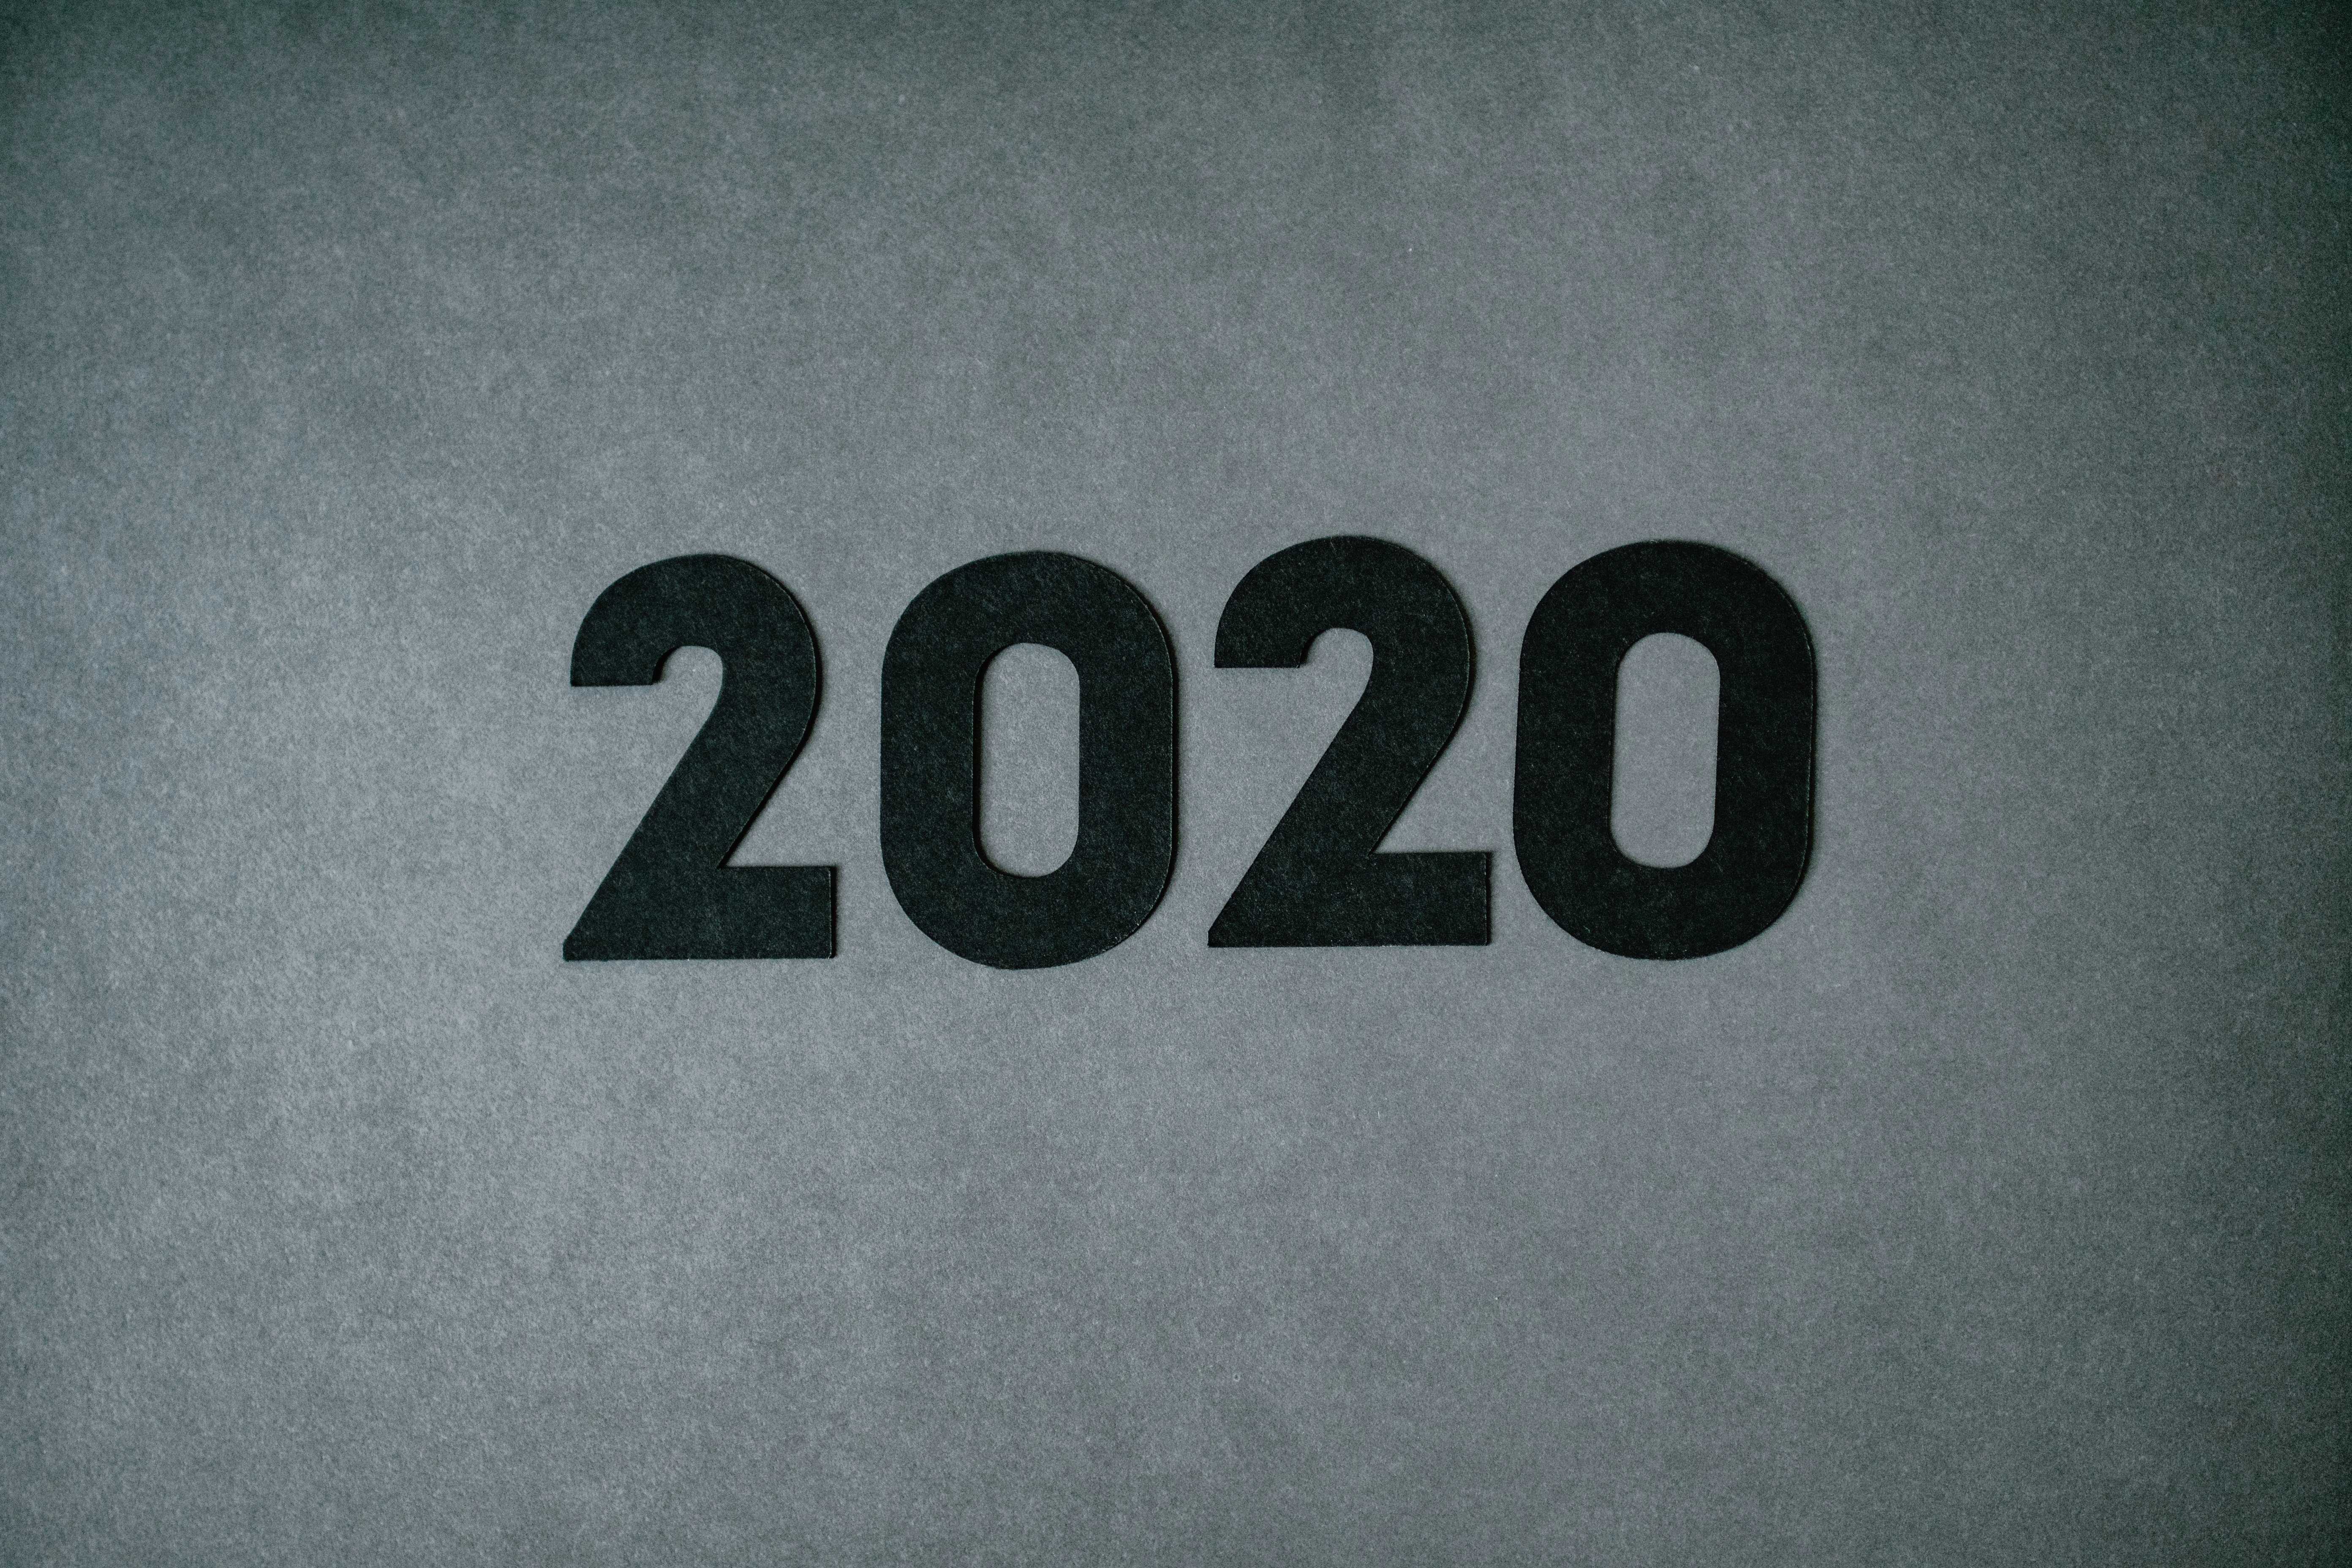 nba equipaciones 2019 2020